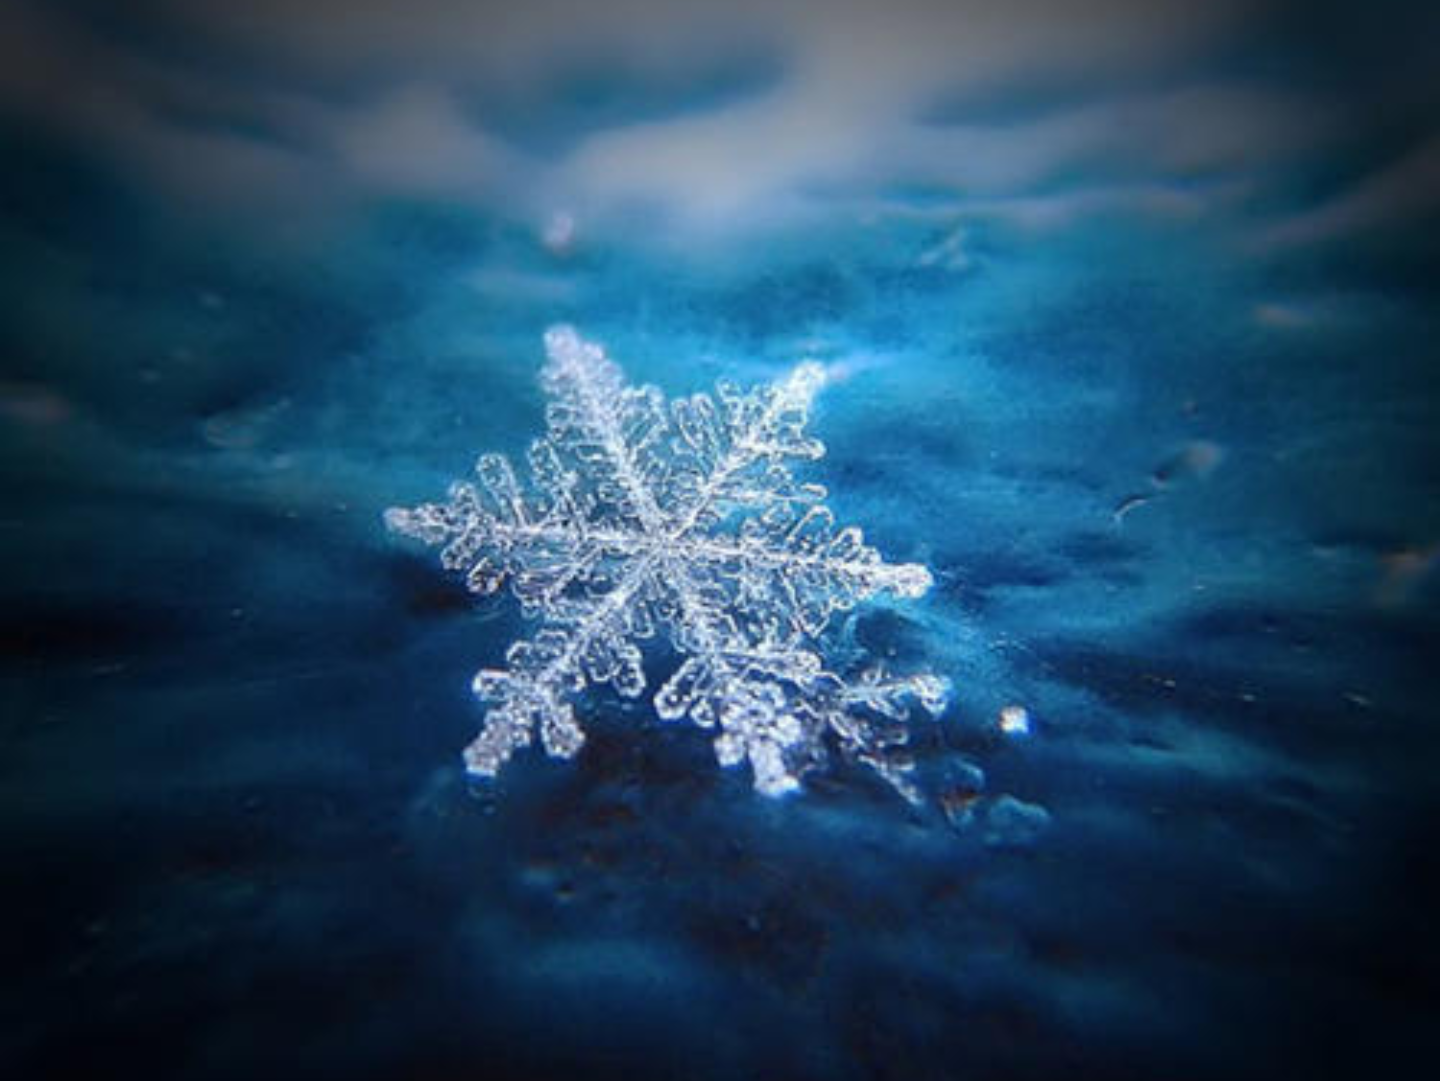 多个冰晶单体组成具有多分枝结构的六角形薄片,冷空气袭来,雪花飘落